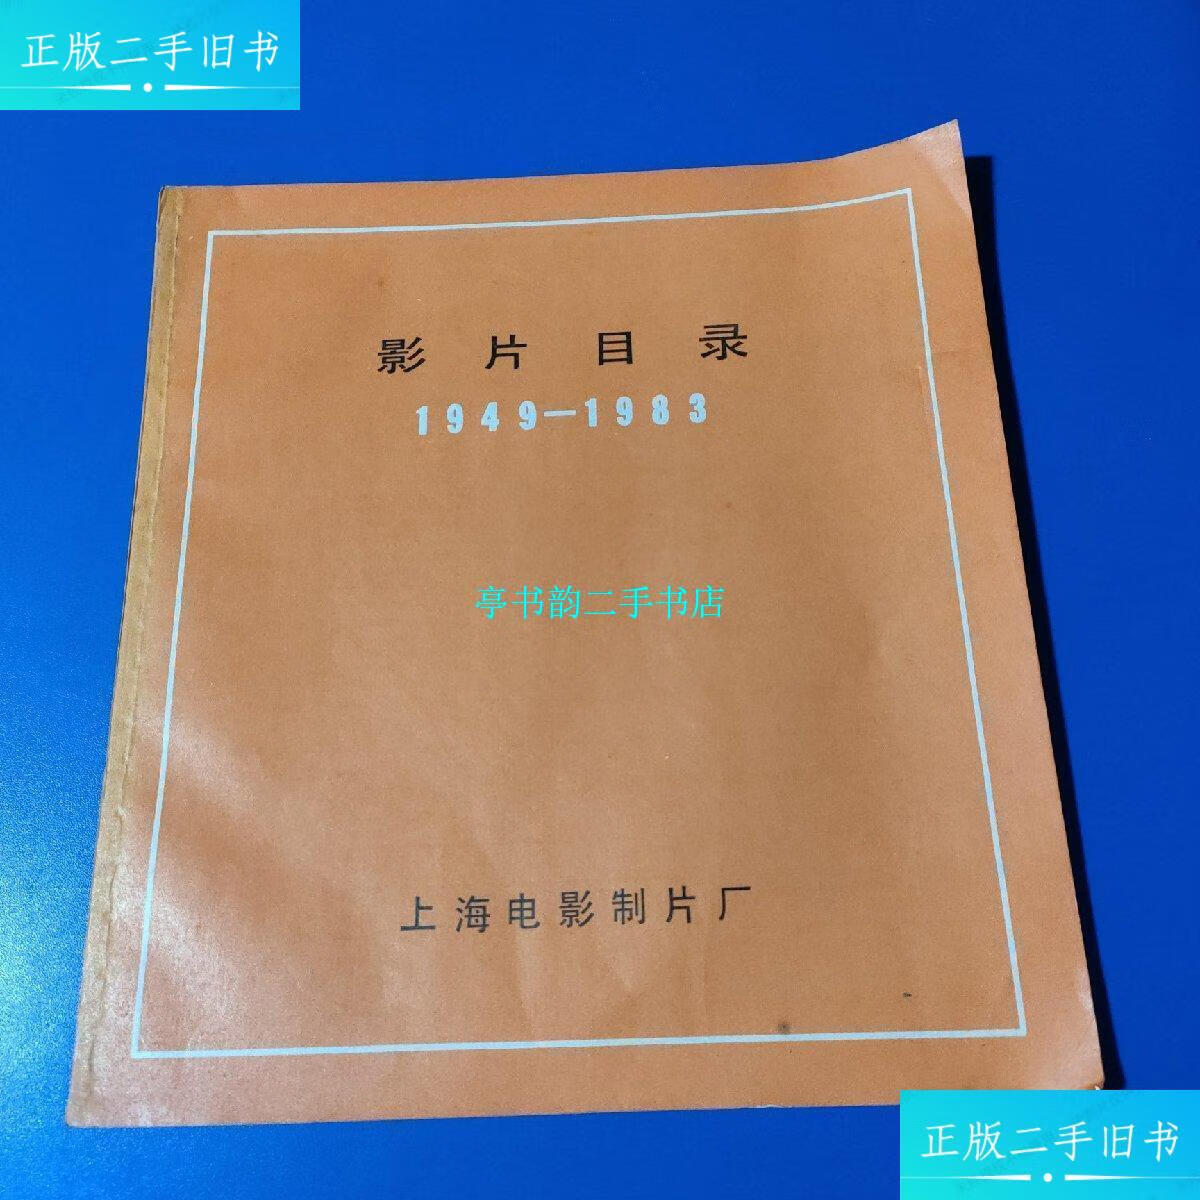 【二手9成新】影片目录[1949 -1983] /上海电影制片厂生产办公视频 上海电影制